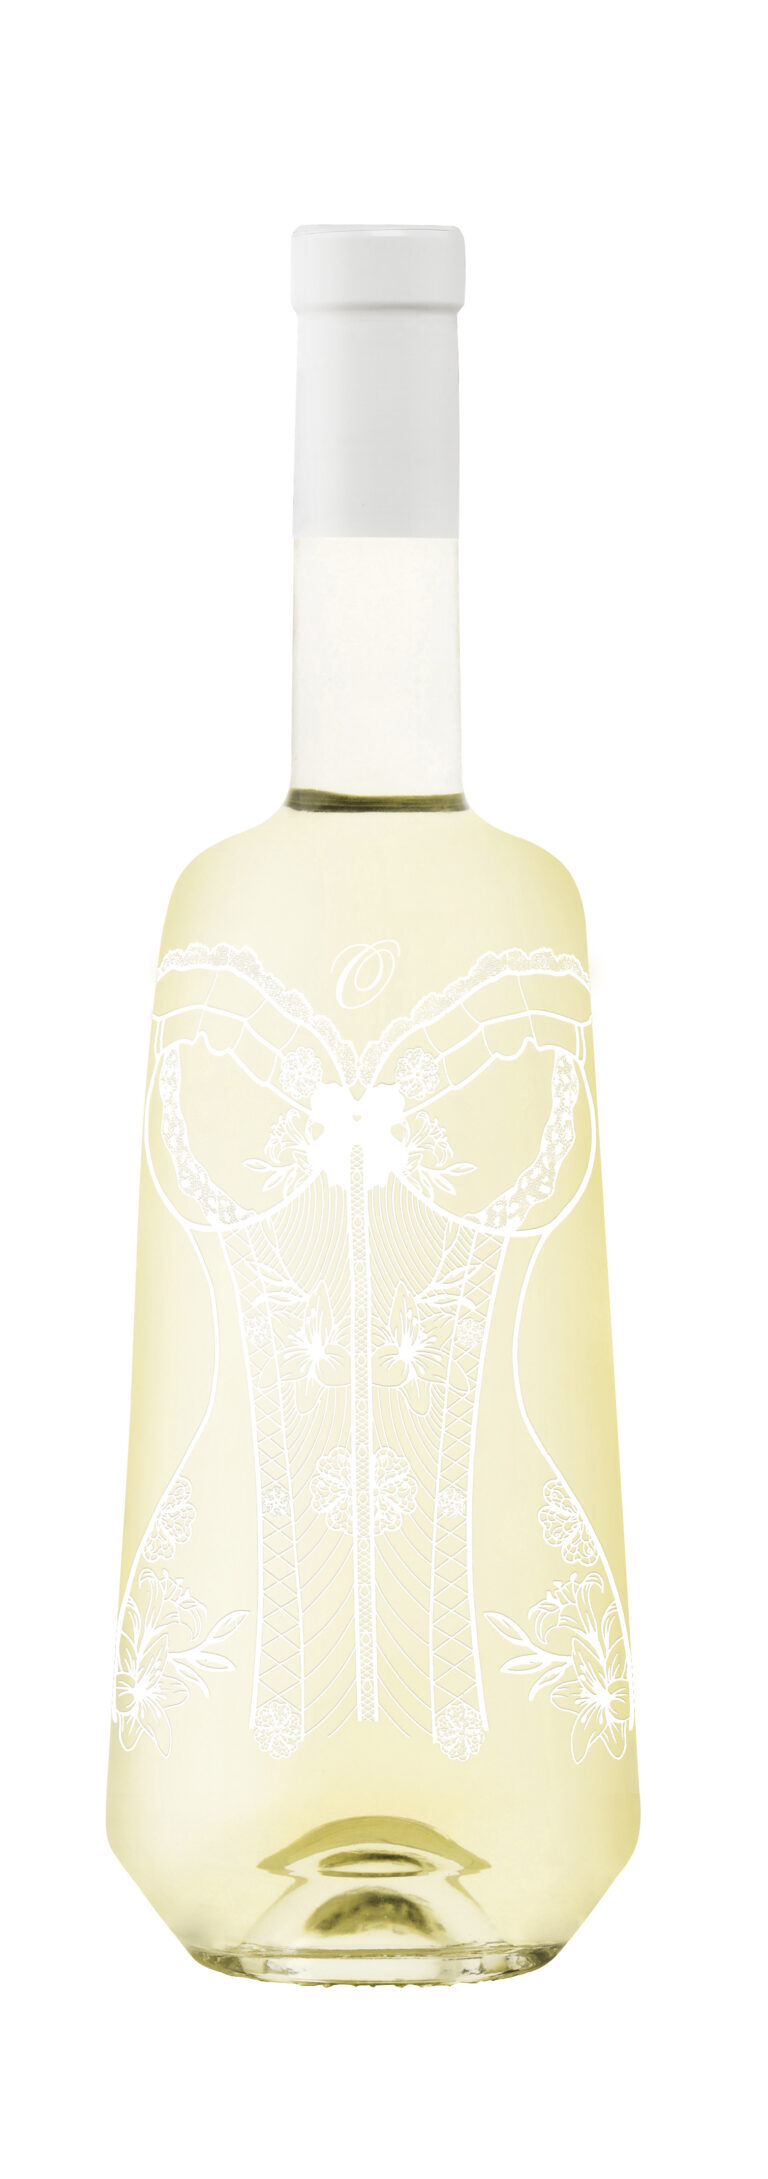 bouteille-vin-blanc-flatteur-provence-coteaux-aix-graphisme-corset-serigraphie-medaille-elle